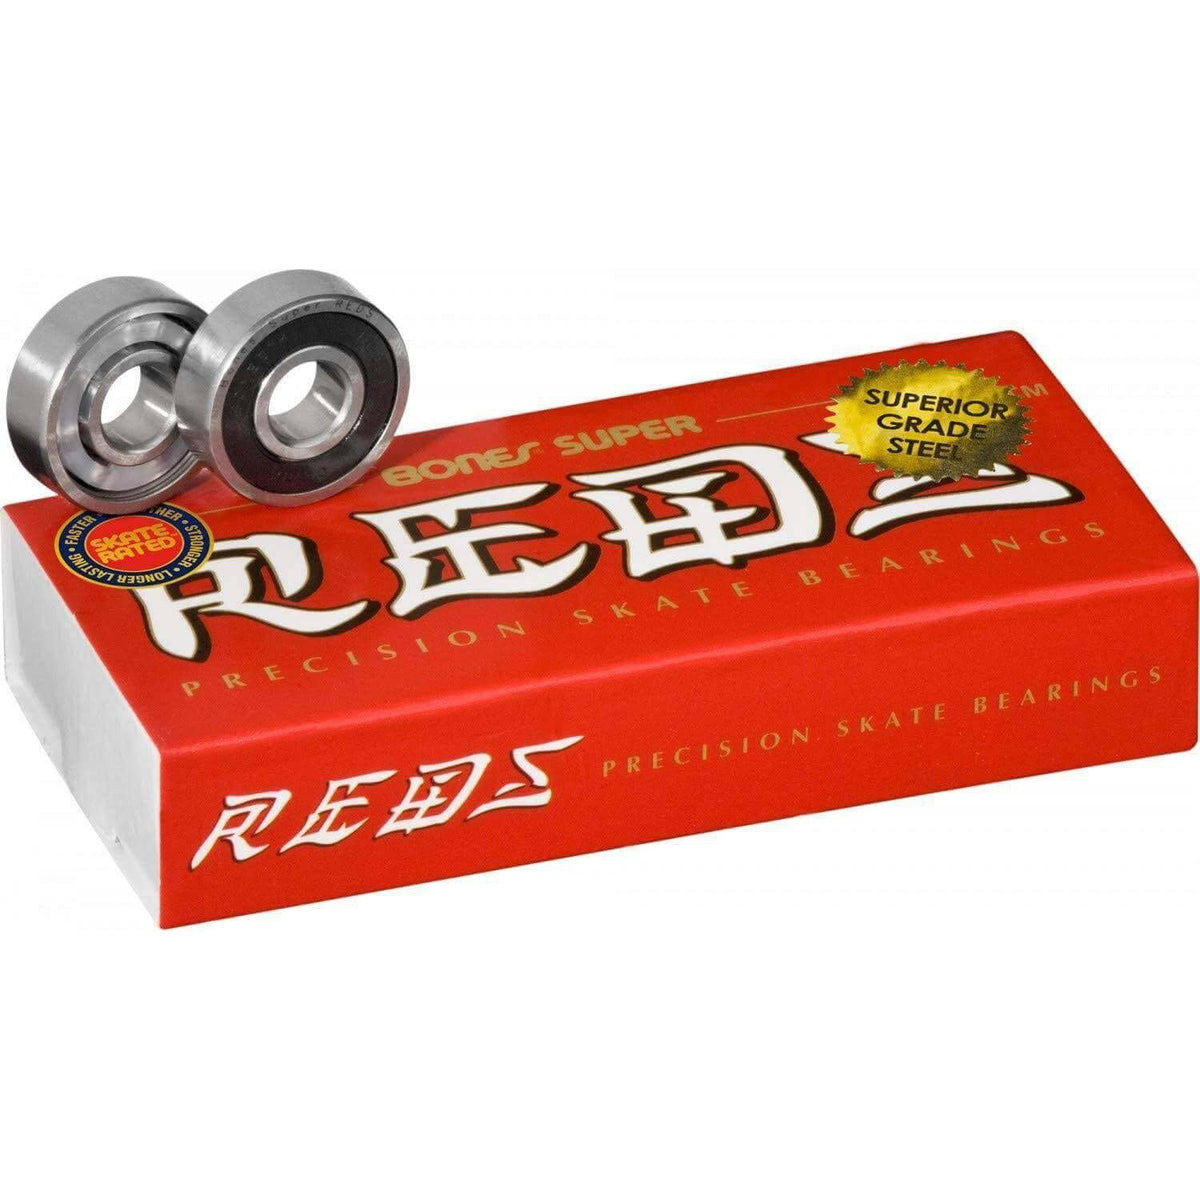 Bones Super Reds Bearings - 16 Pack